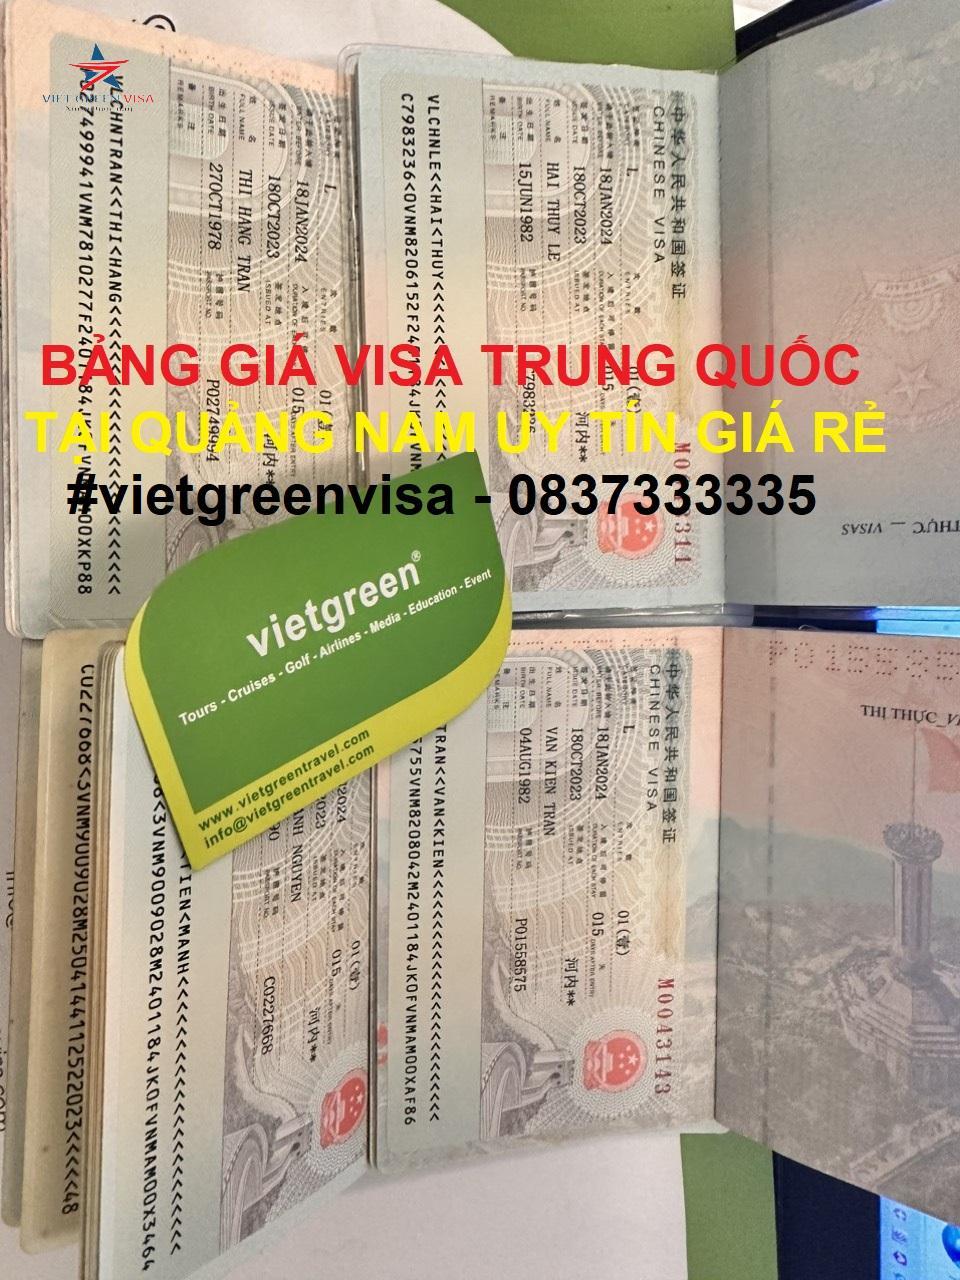 Dịch vụ xin visa Trung Quốc tại Quảng Nam chất lượng uy tín